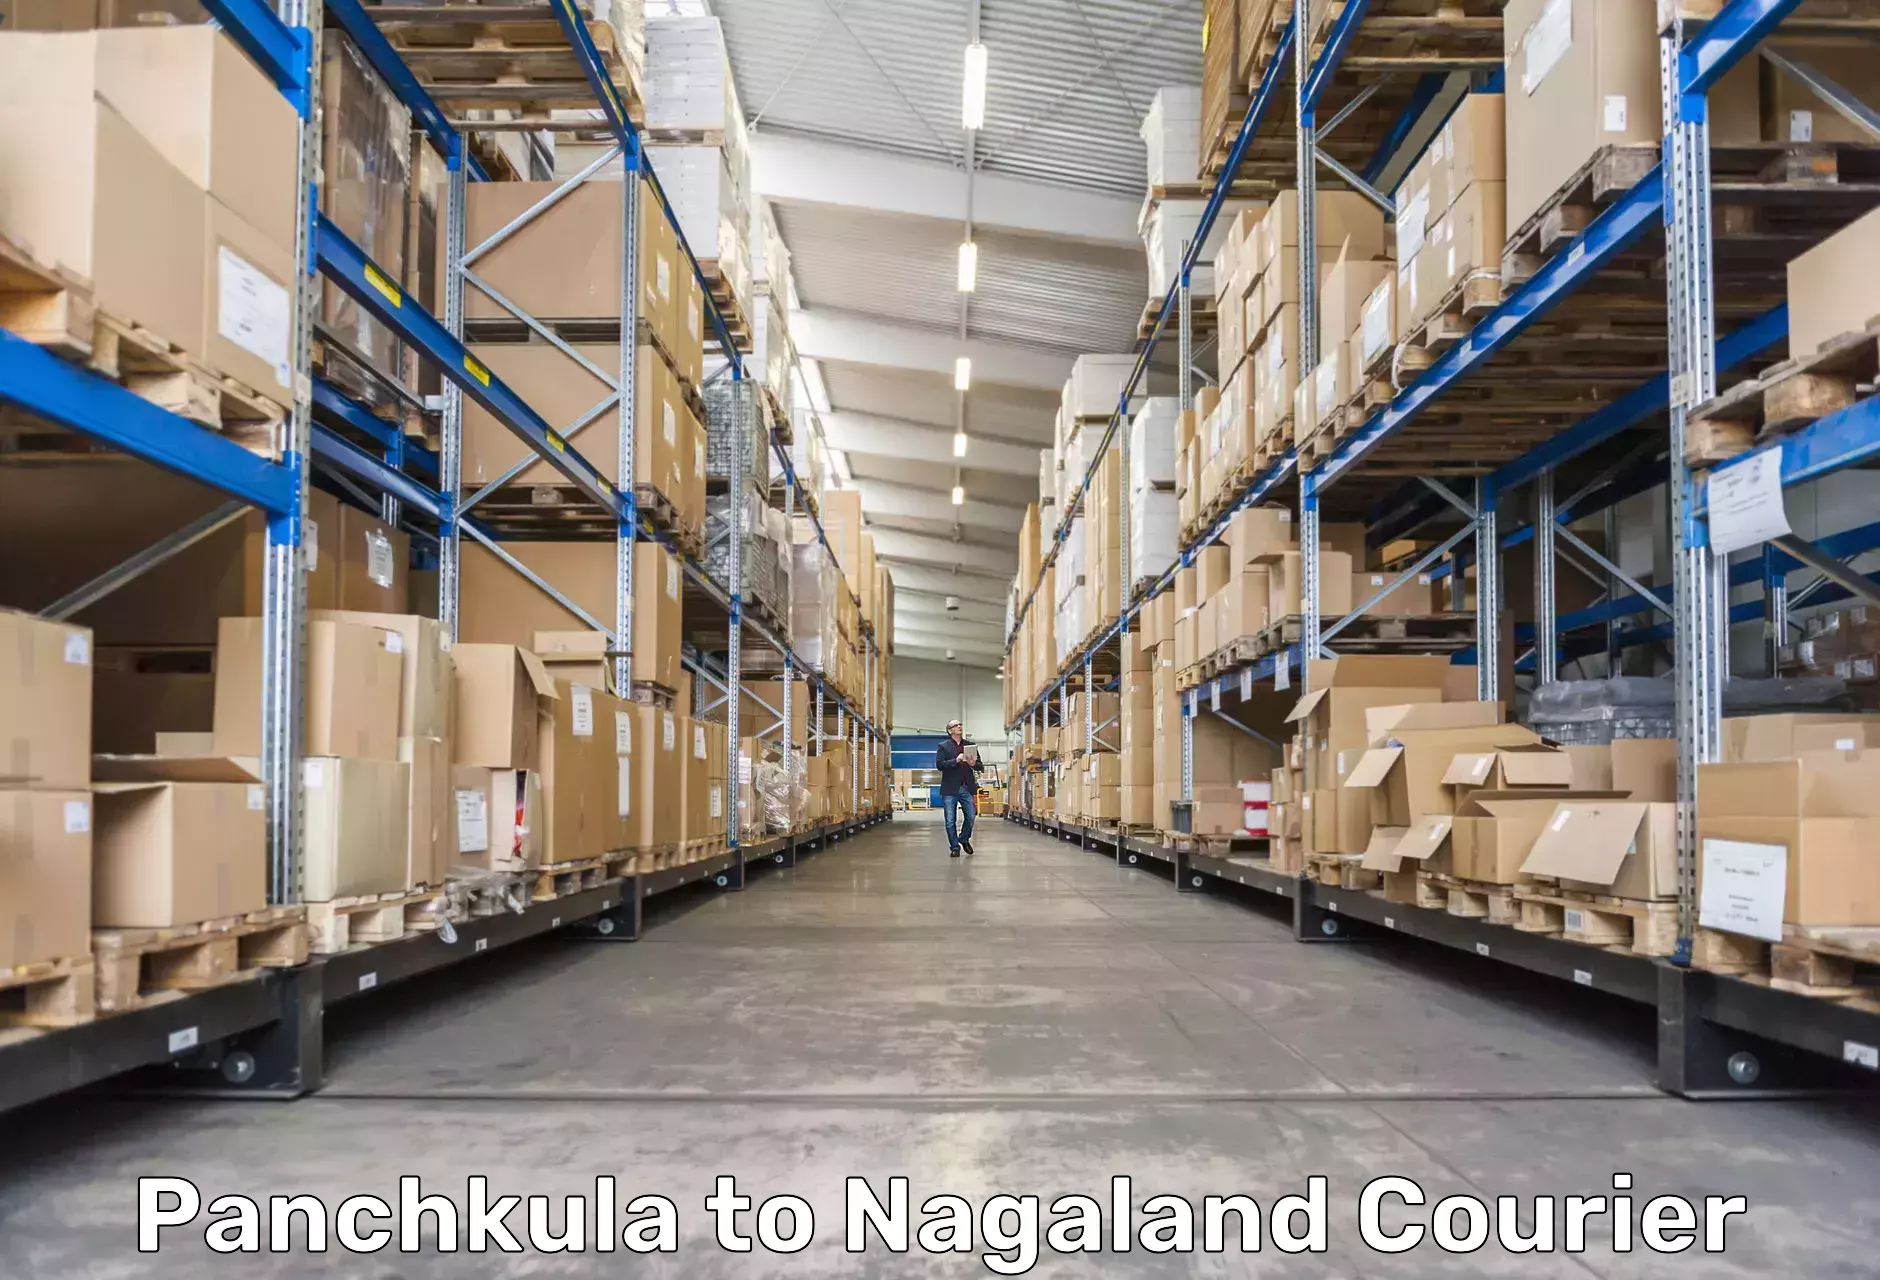 Express mail solutions Panchkula to NIT Nagaland